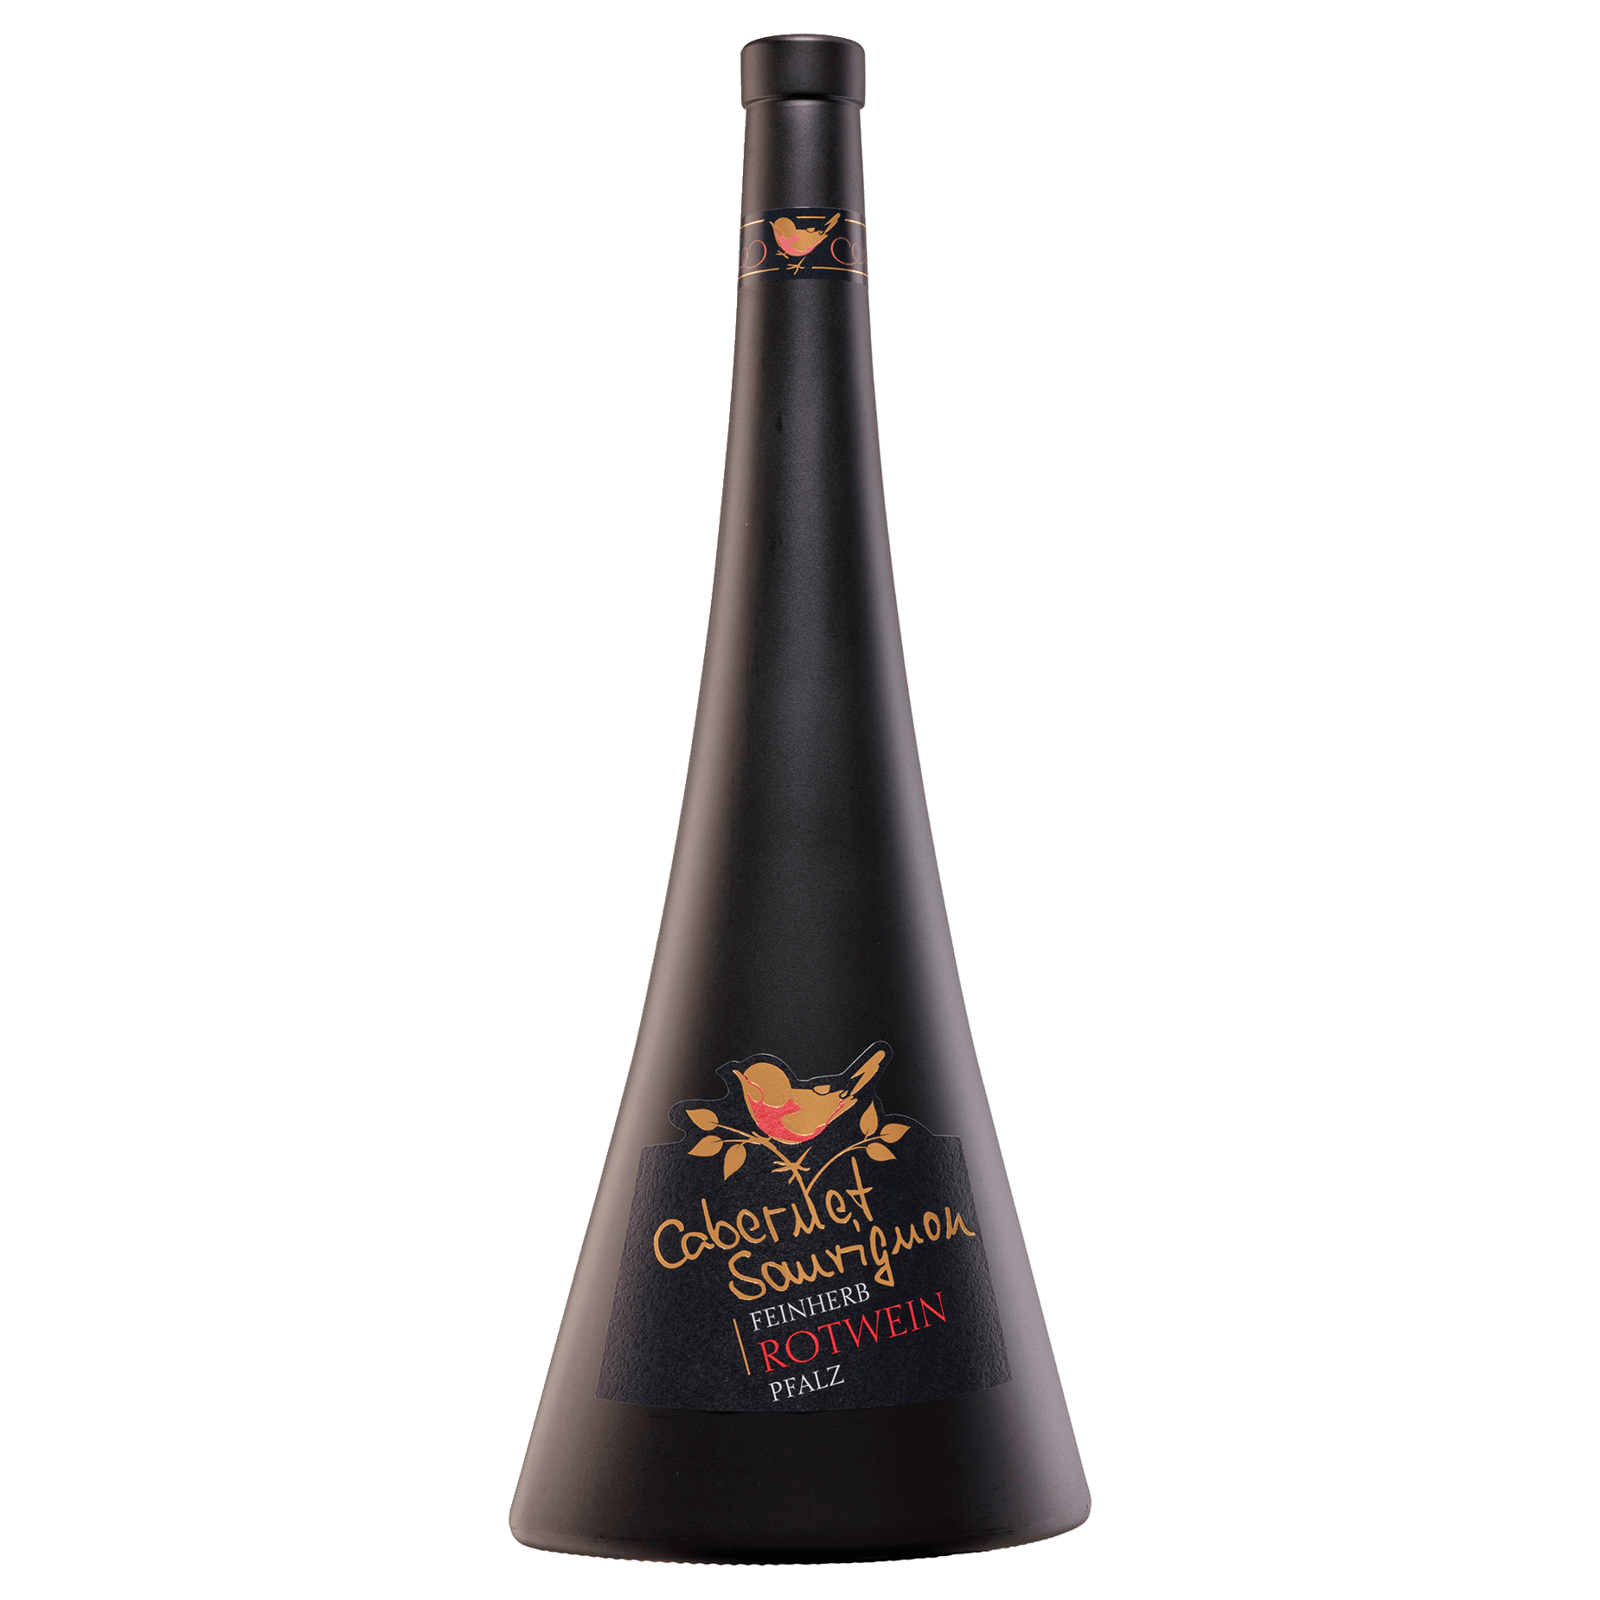 Moselland Rotwein Pfalz 0,75l REWE Sauvignon bestellen! bei Cabernet QbA online feinherb